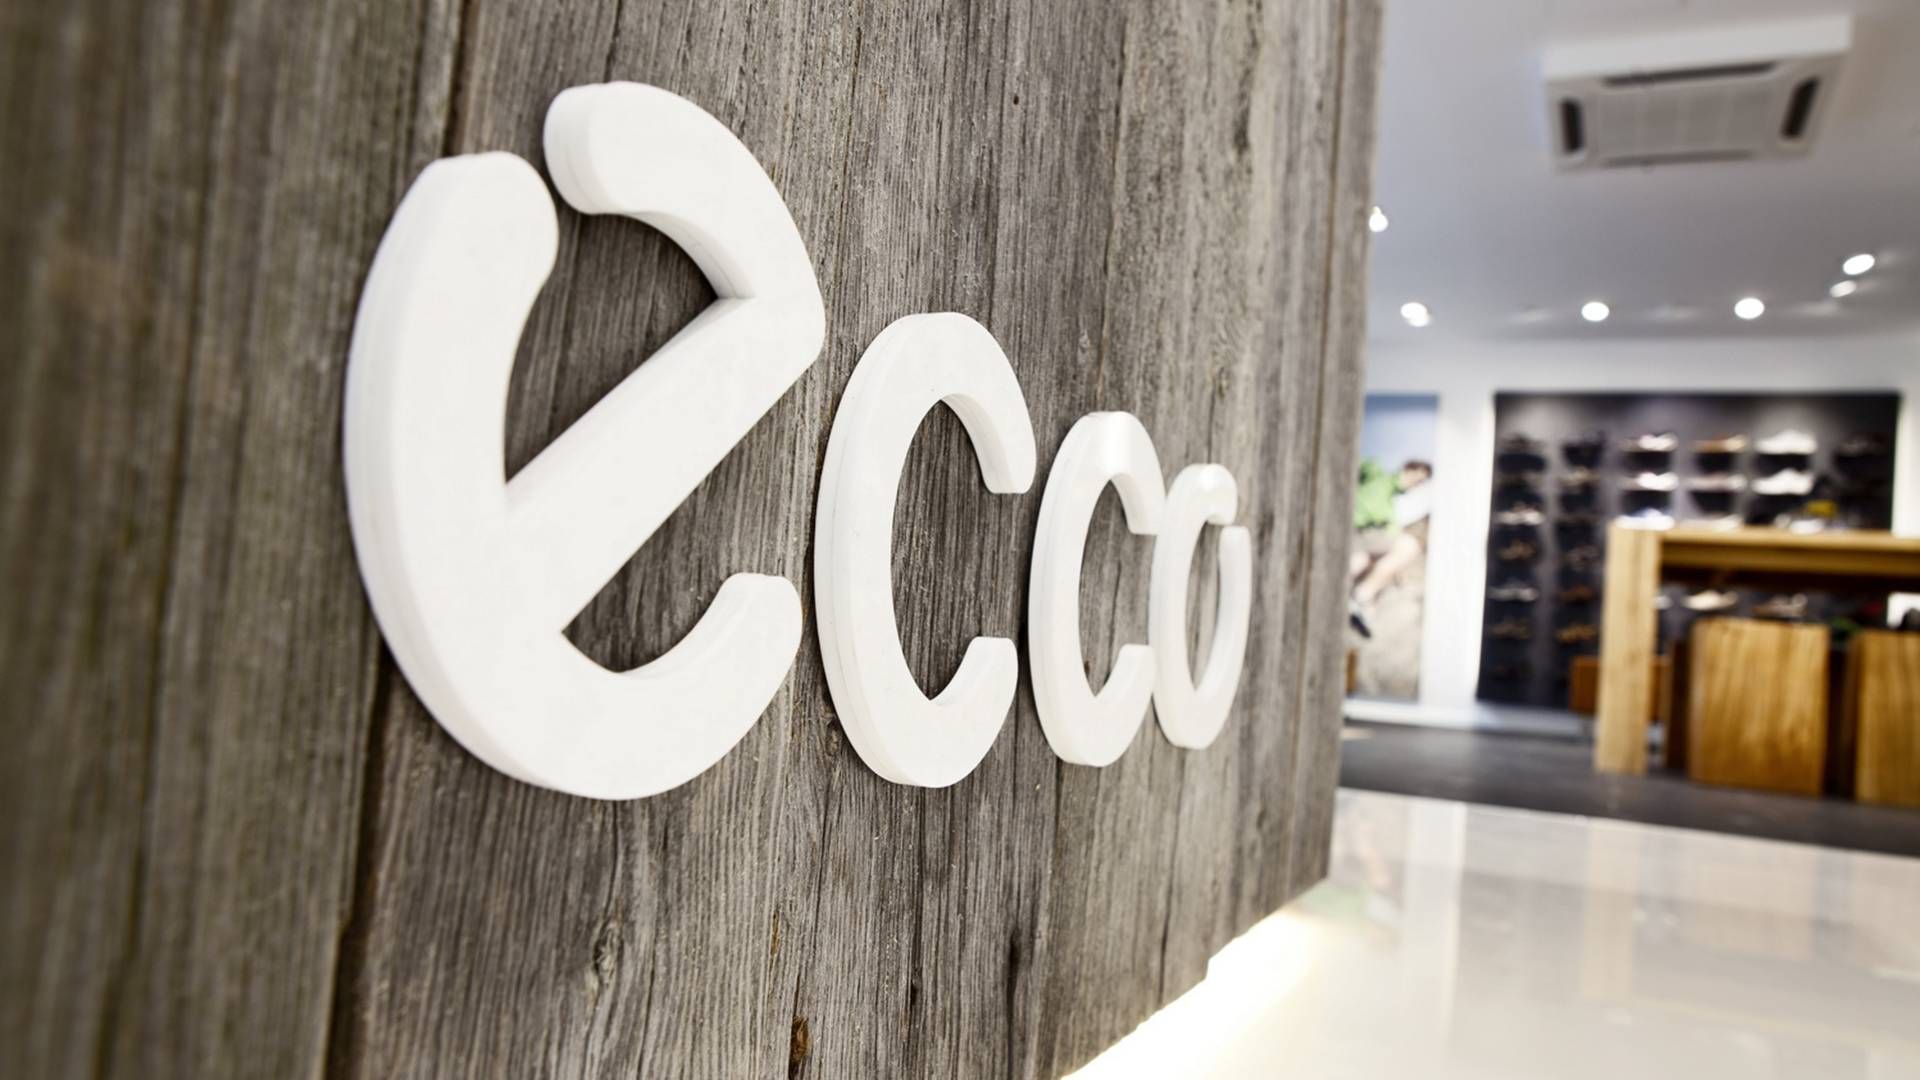 Ecco har de seneste måneder været i stormvejr på grund af koncernens beslutning om at blive i Rusland. | Foto: PR / Ecco